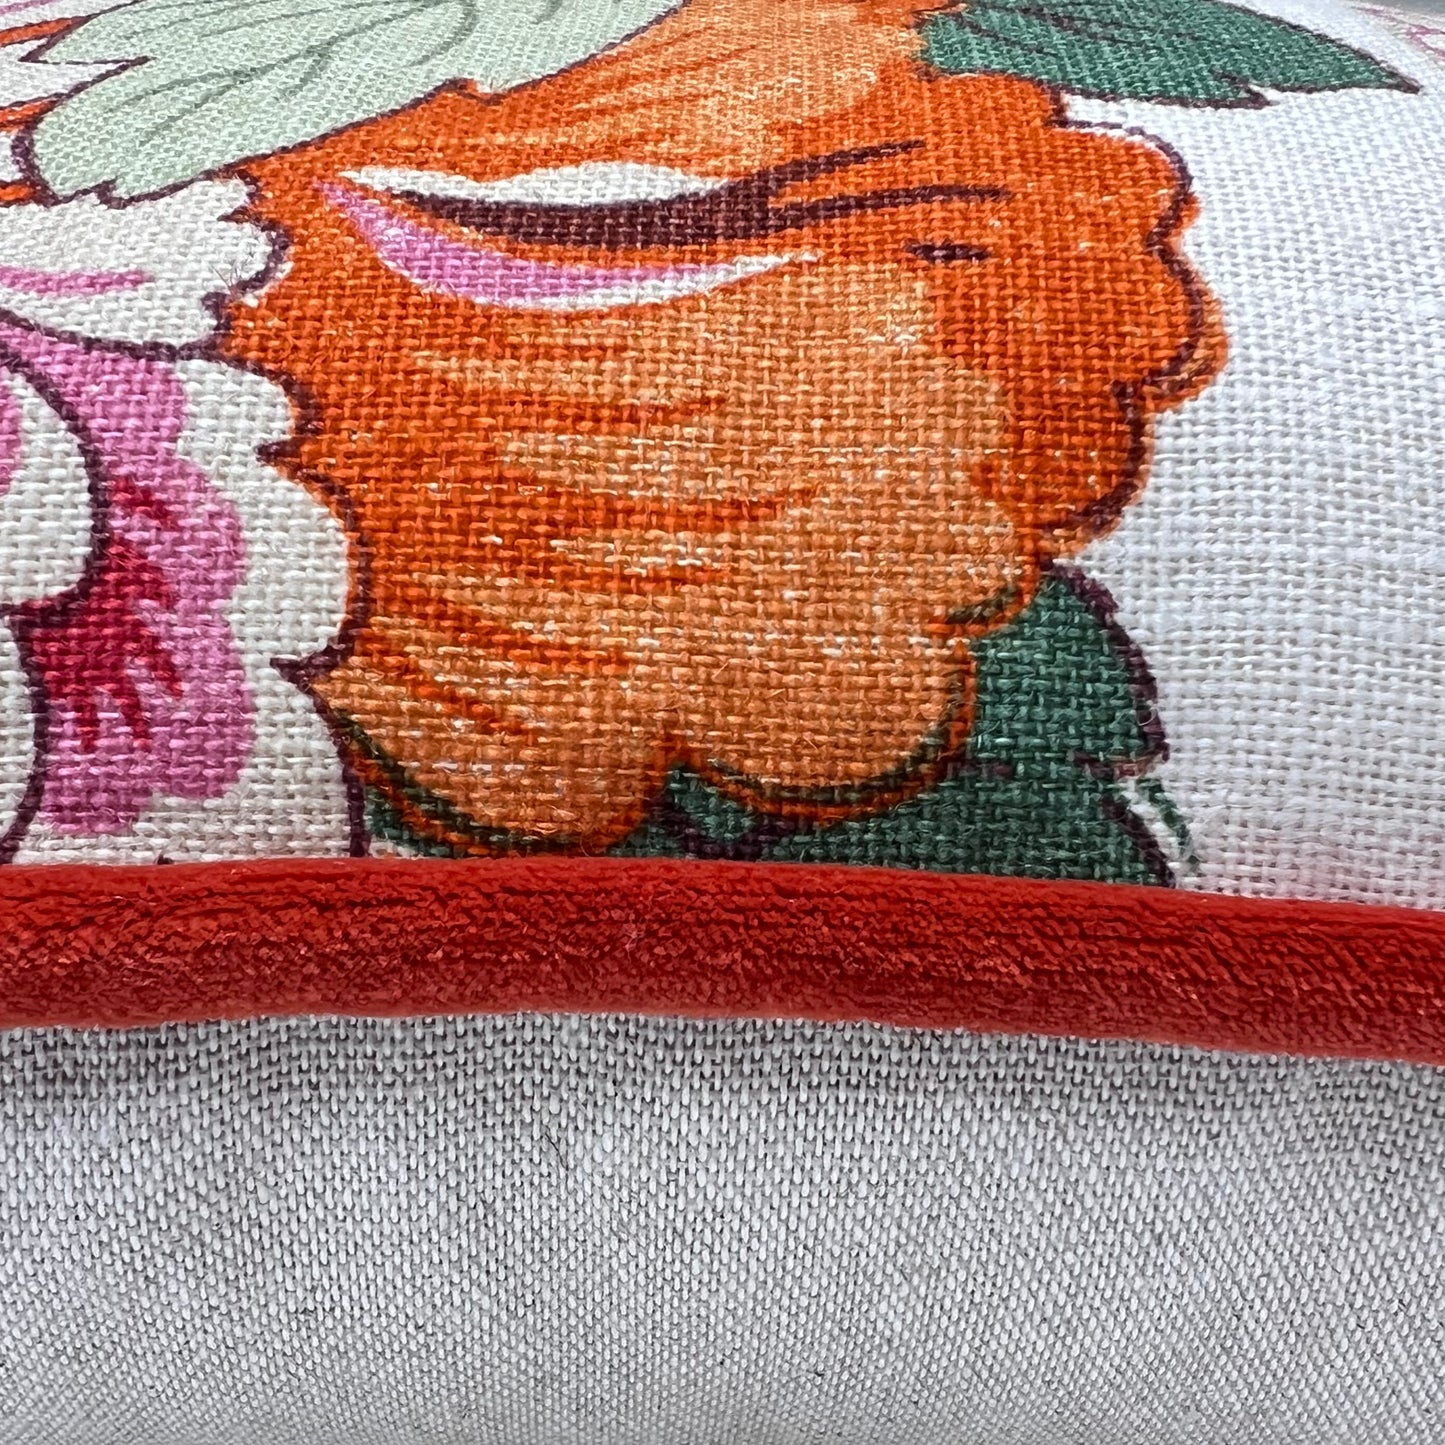 GP & J Baker Designer Decorative Magnolia Cream Red Orange Cushion Pillow Throw Cover